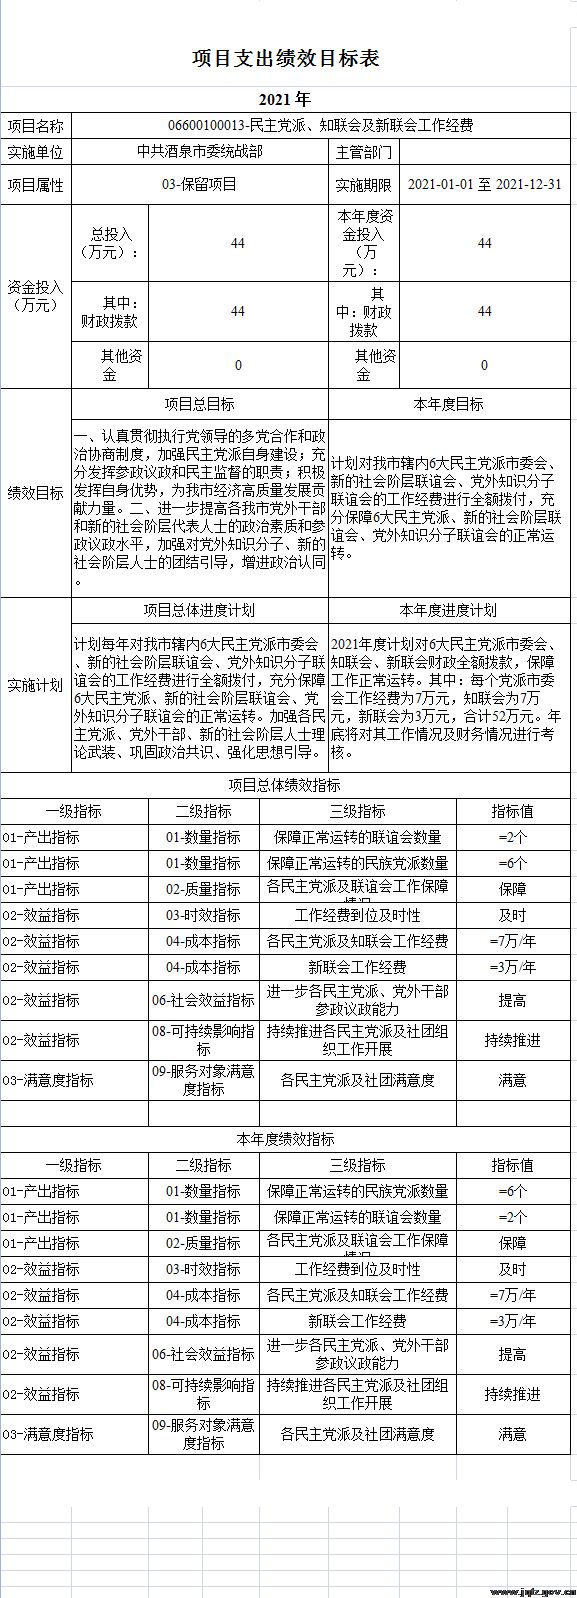 中共酒泉市委统战部关于2021年部门预算公开情况的说明